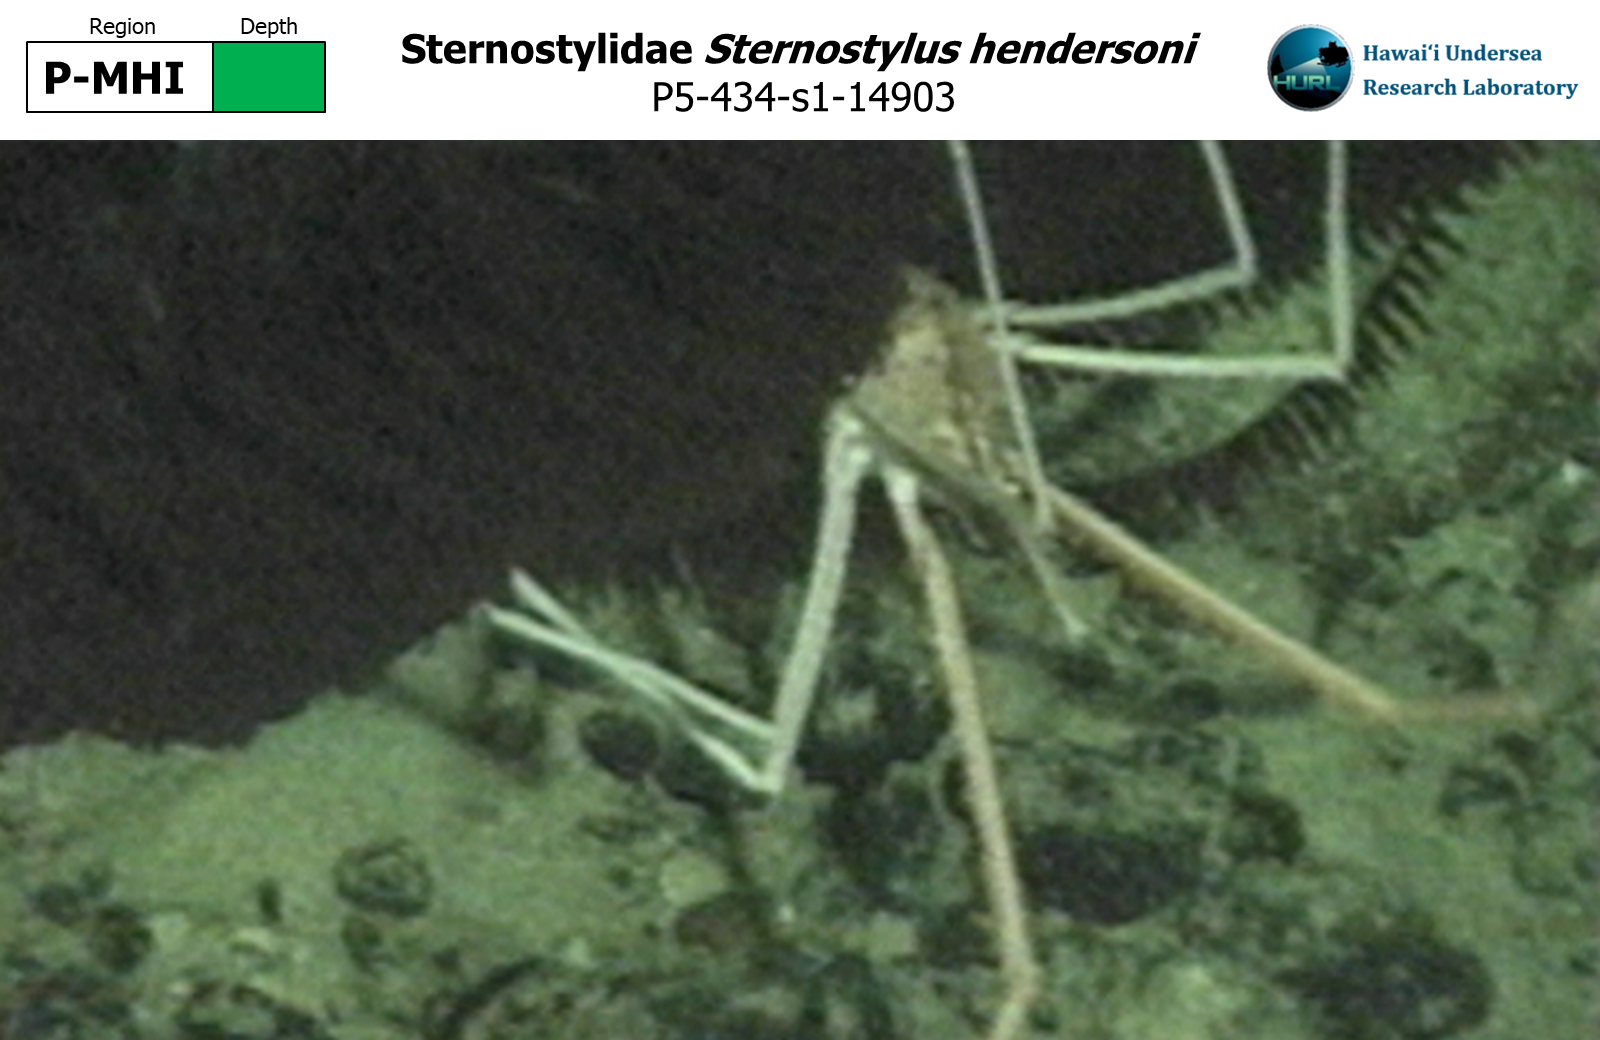 Sternostylus hendersoni